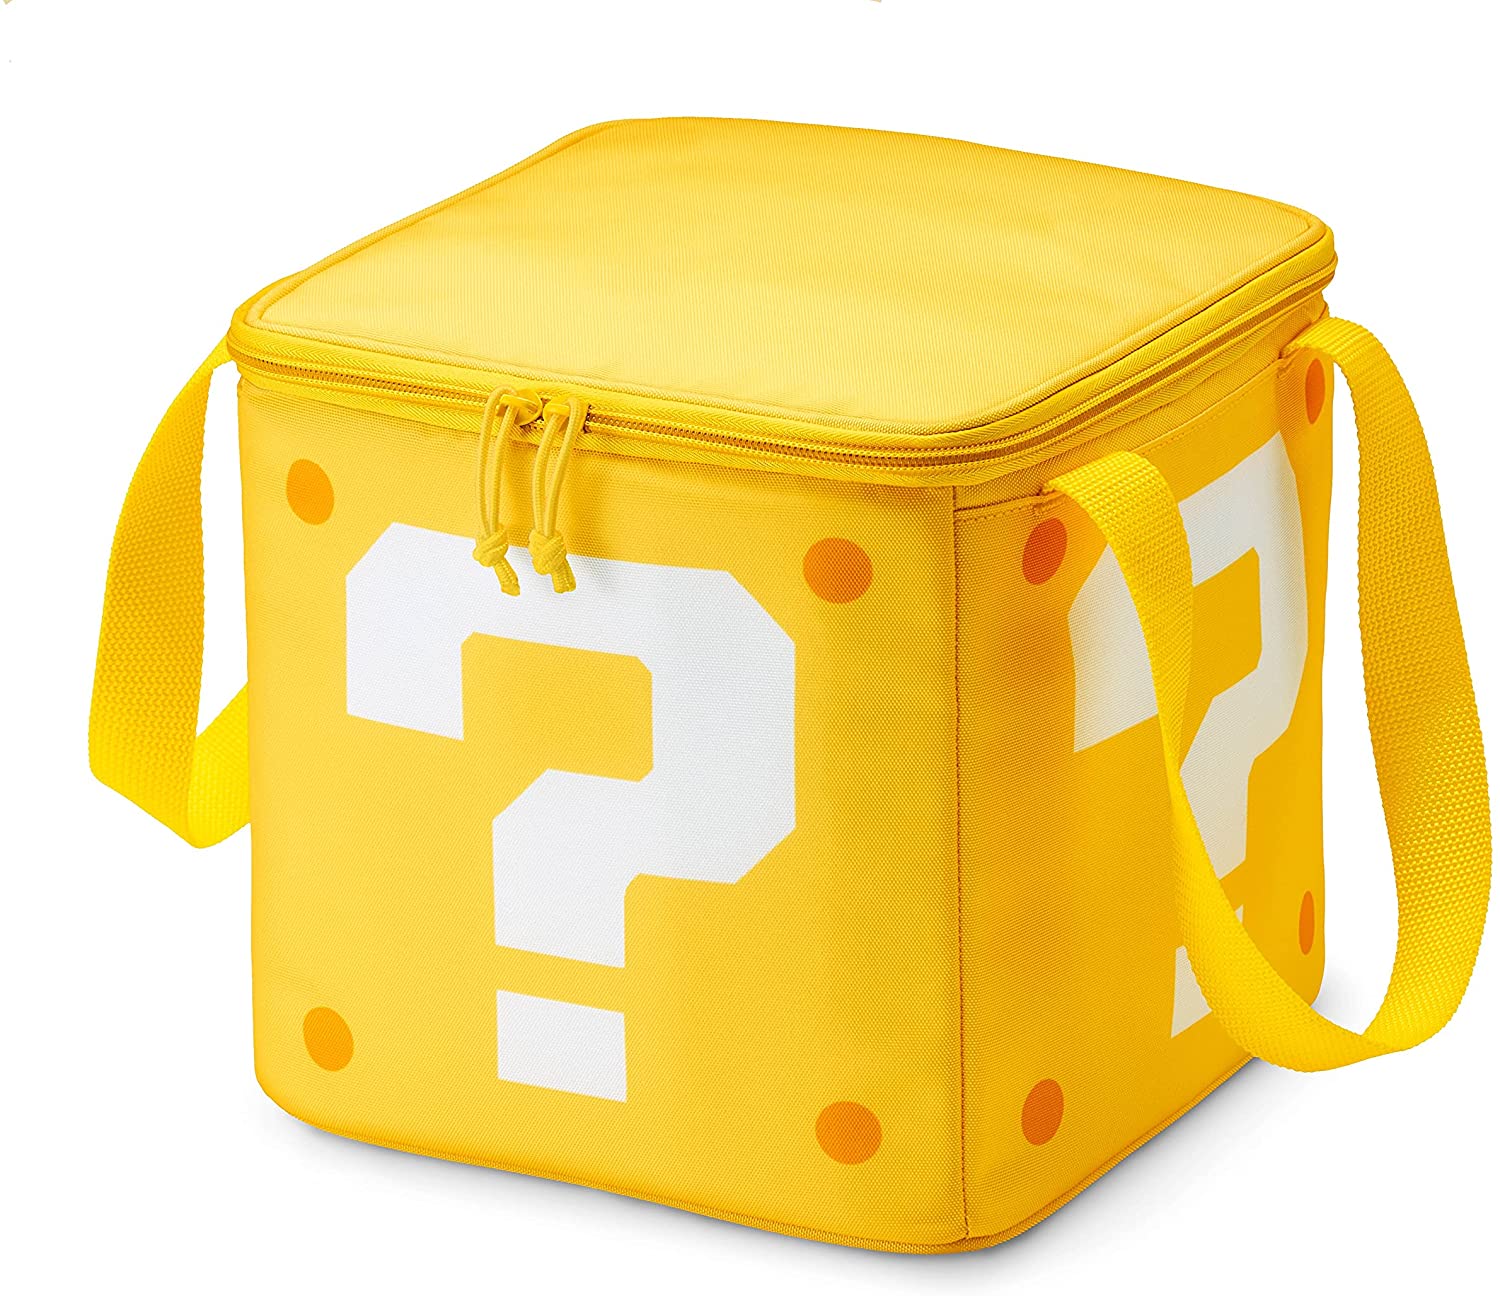 Official Nintendo Super Mario Bros Collector Question Block Kid